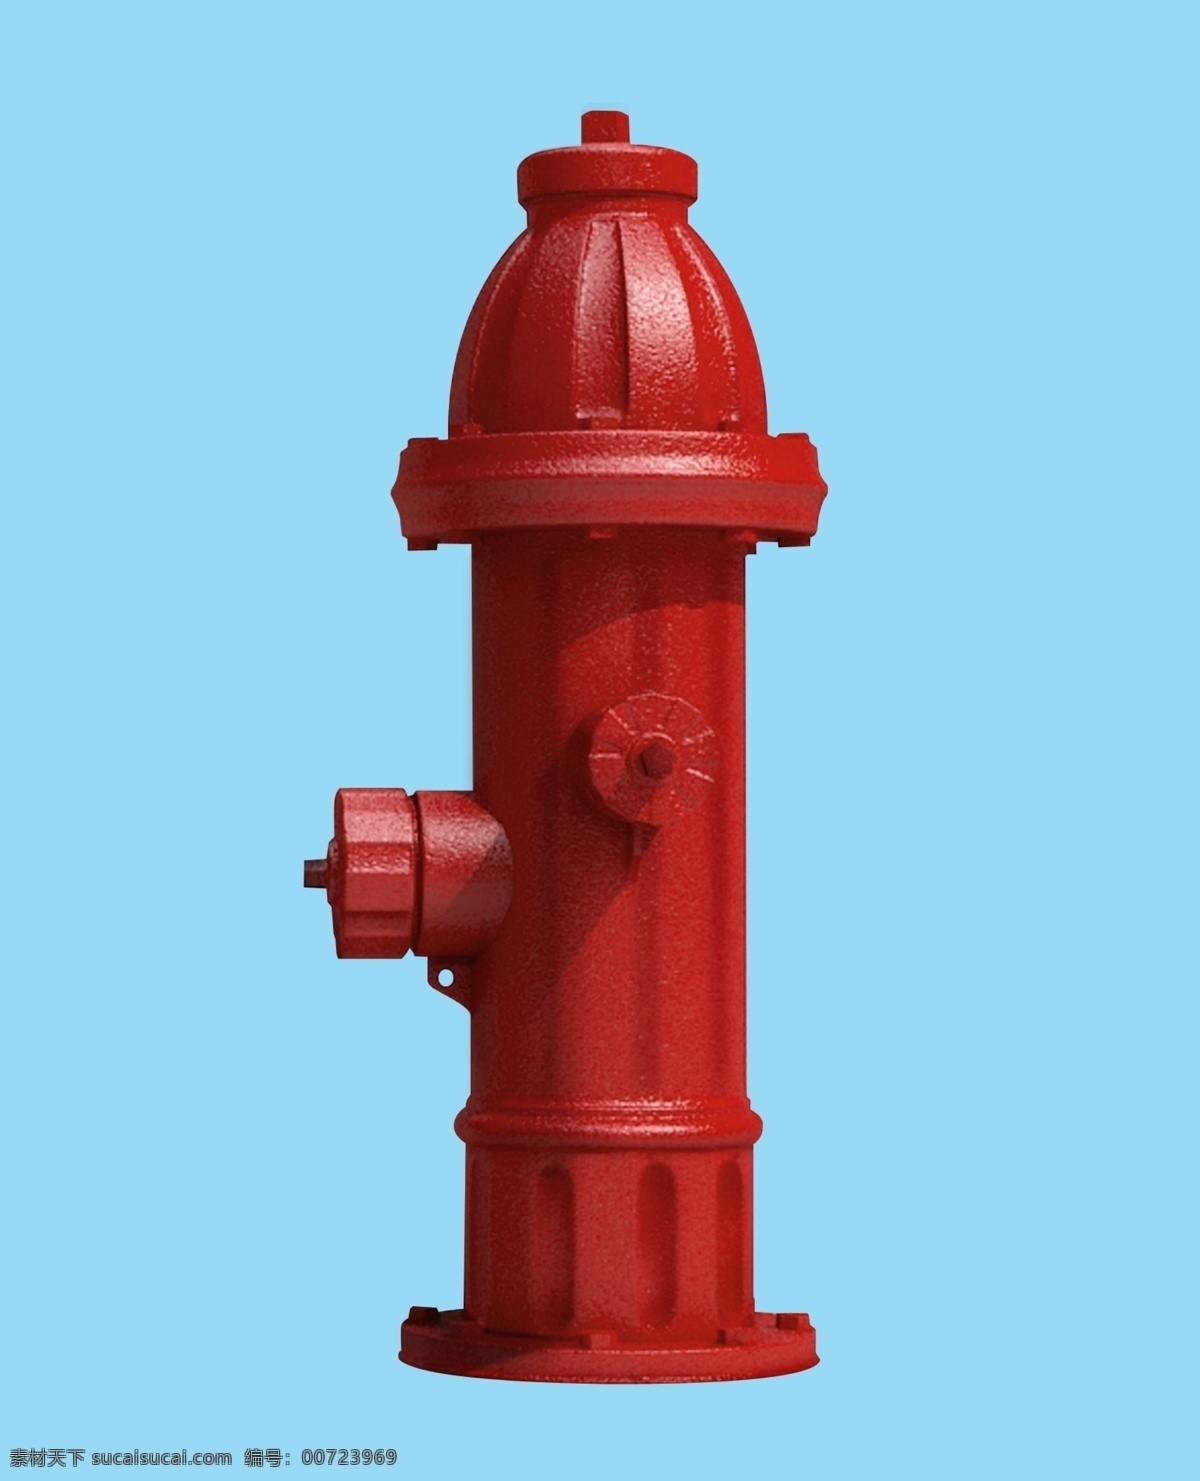 消防栓图片 消防栓 消防栓素材 红色消防栓 栓